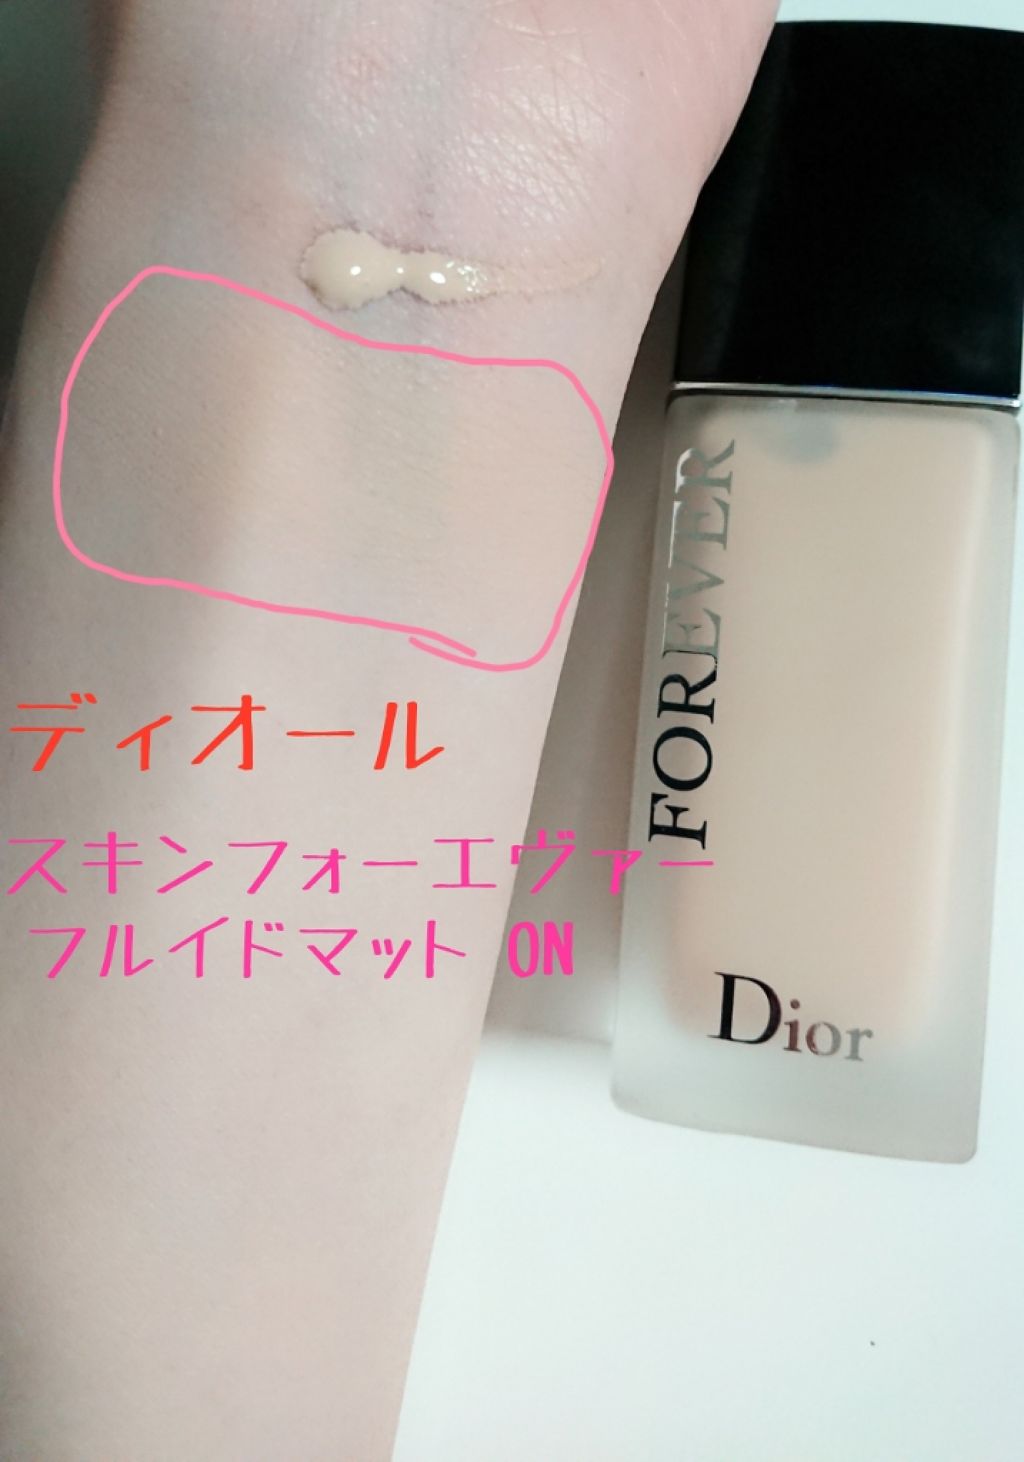 Dior♡ディオールスキン フォーエバー フルイド マット